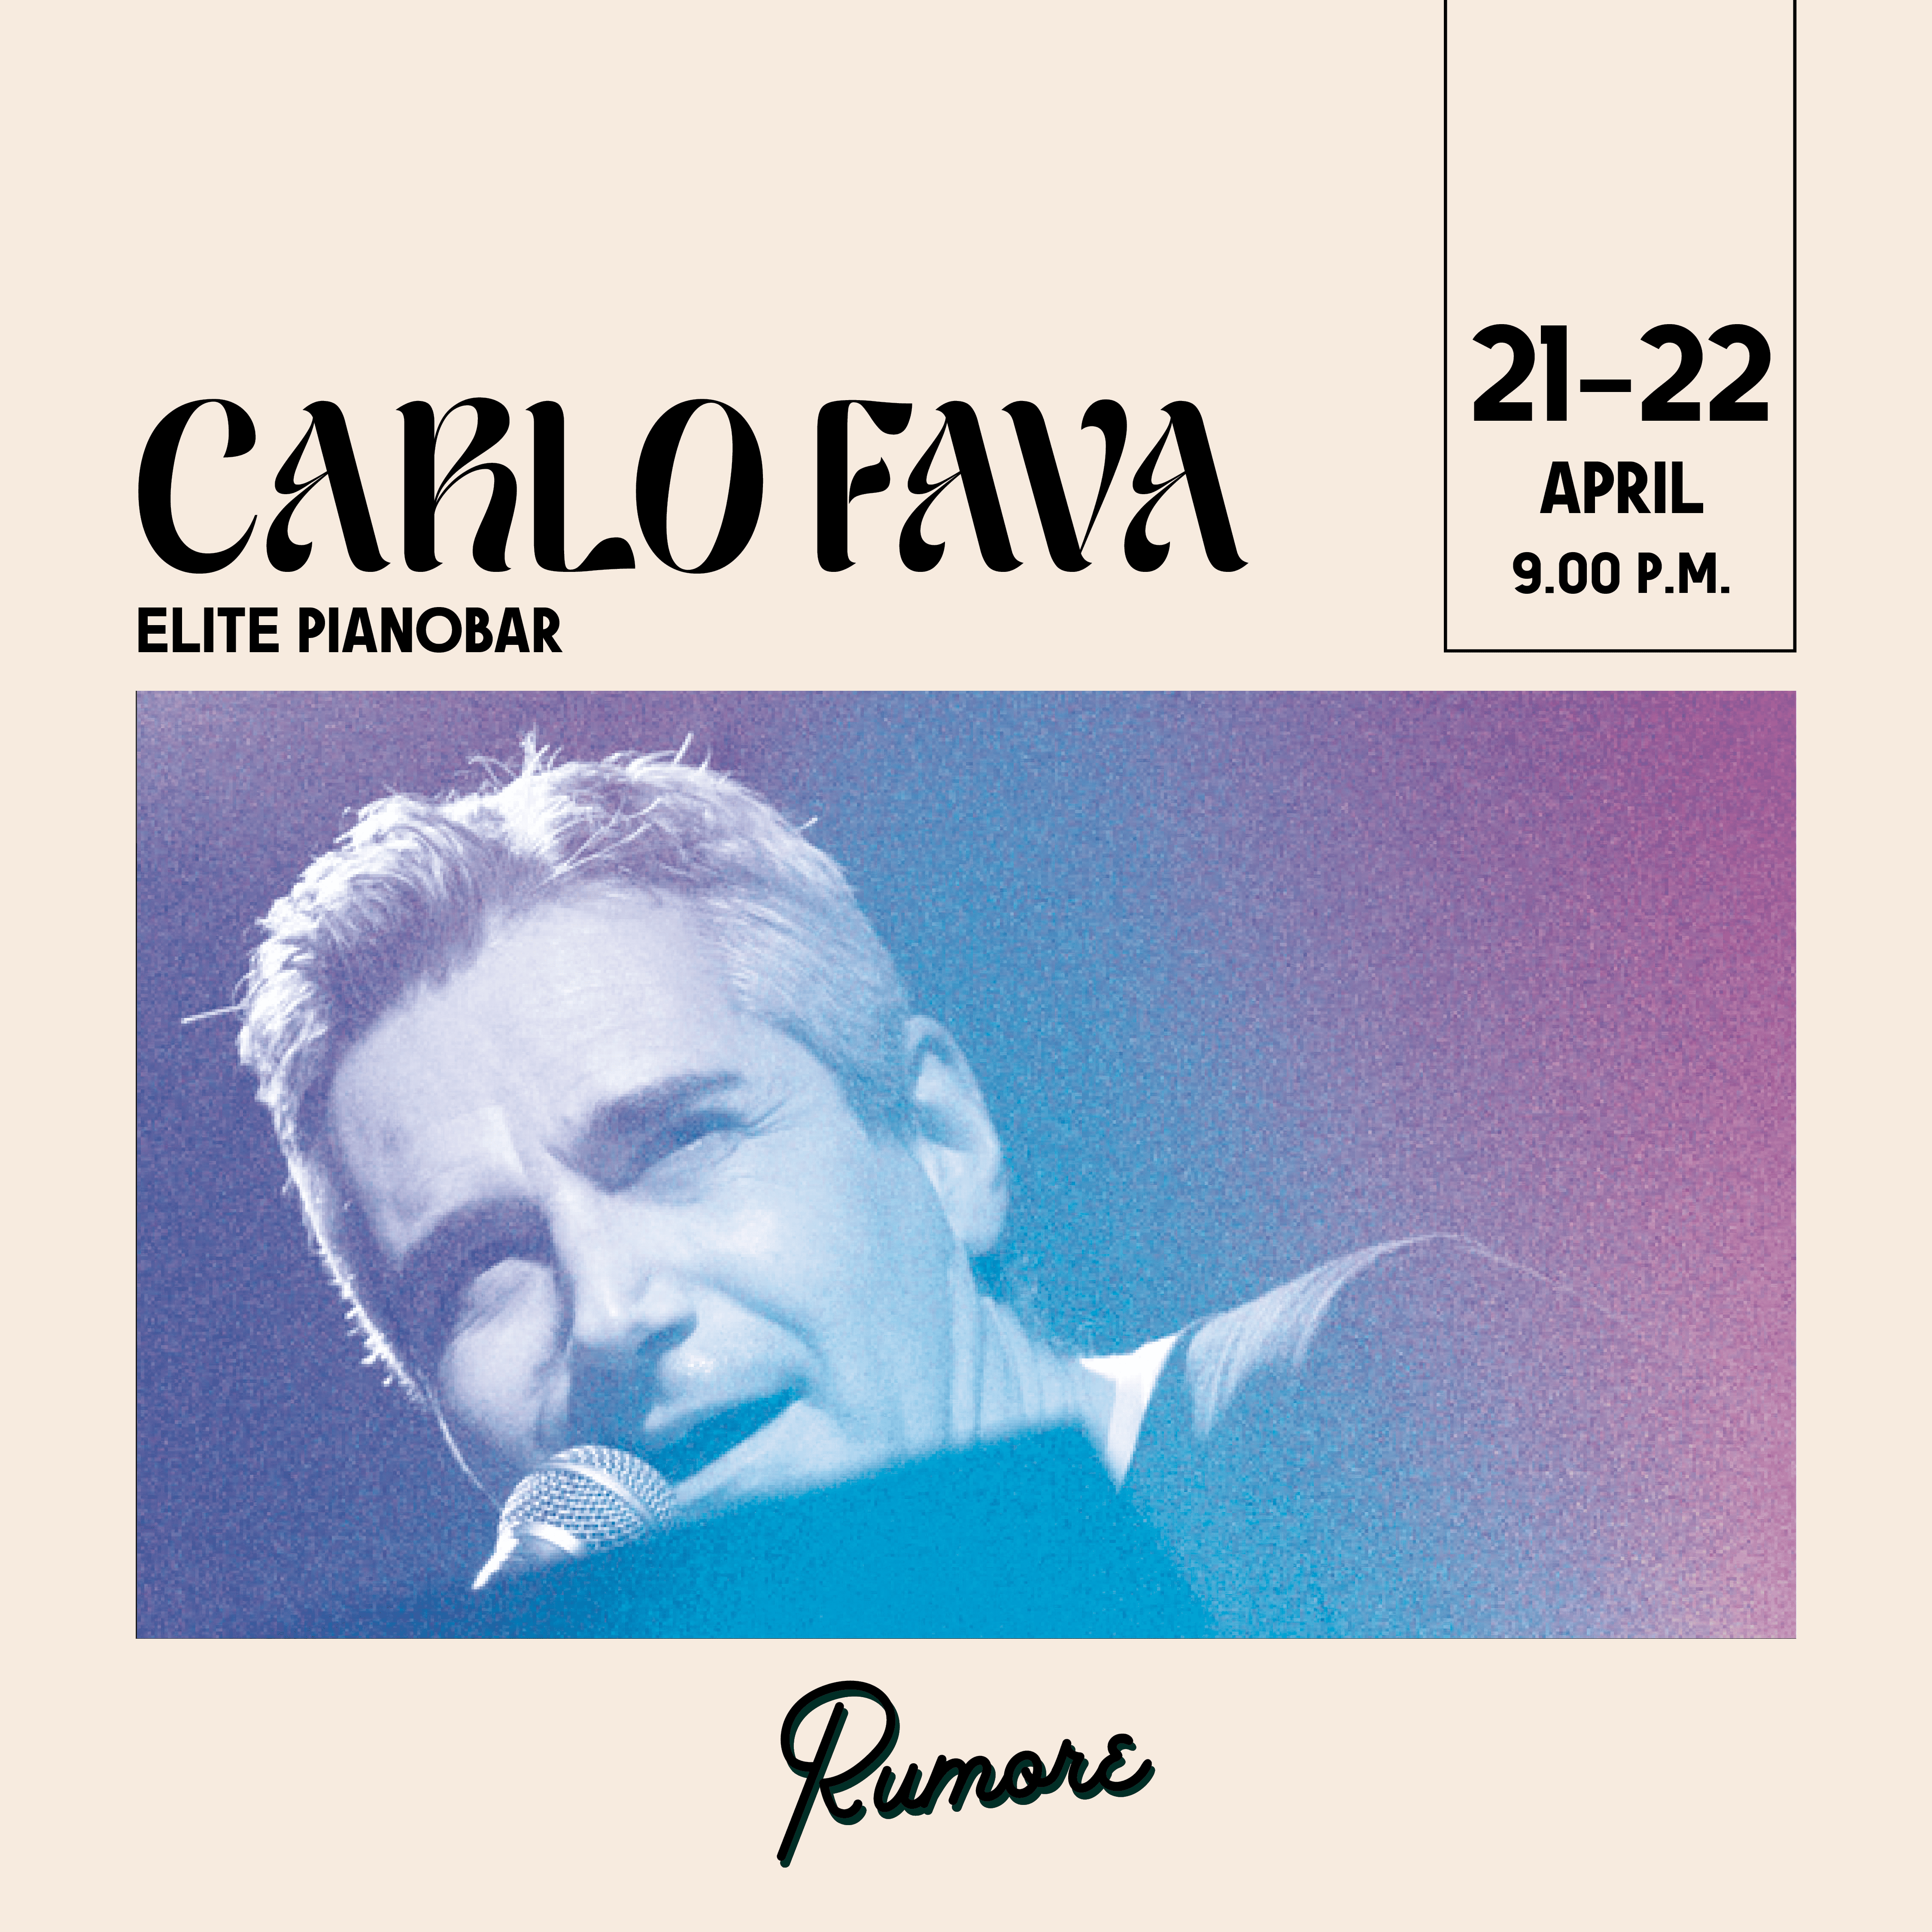 Carlo Fava elite pianobar il 21 e 22 aprile dalle 21.00 al ristorante Rumore